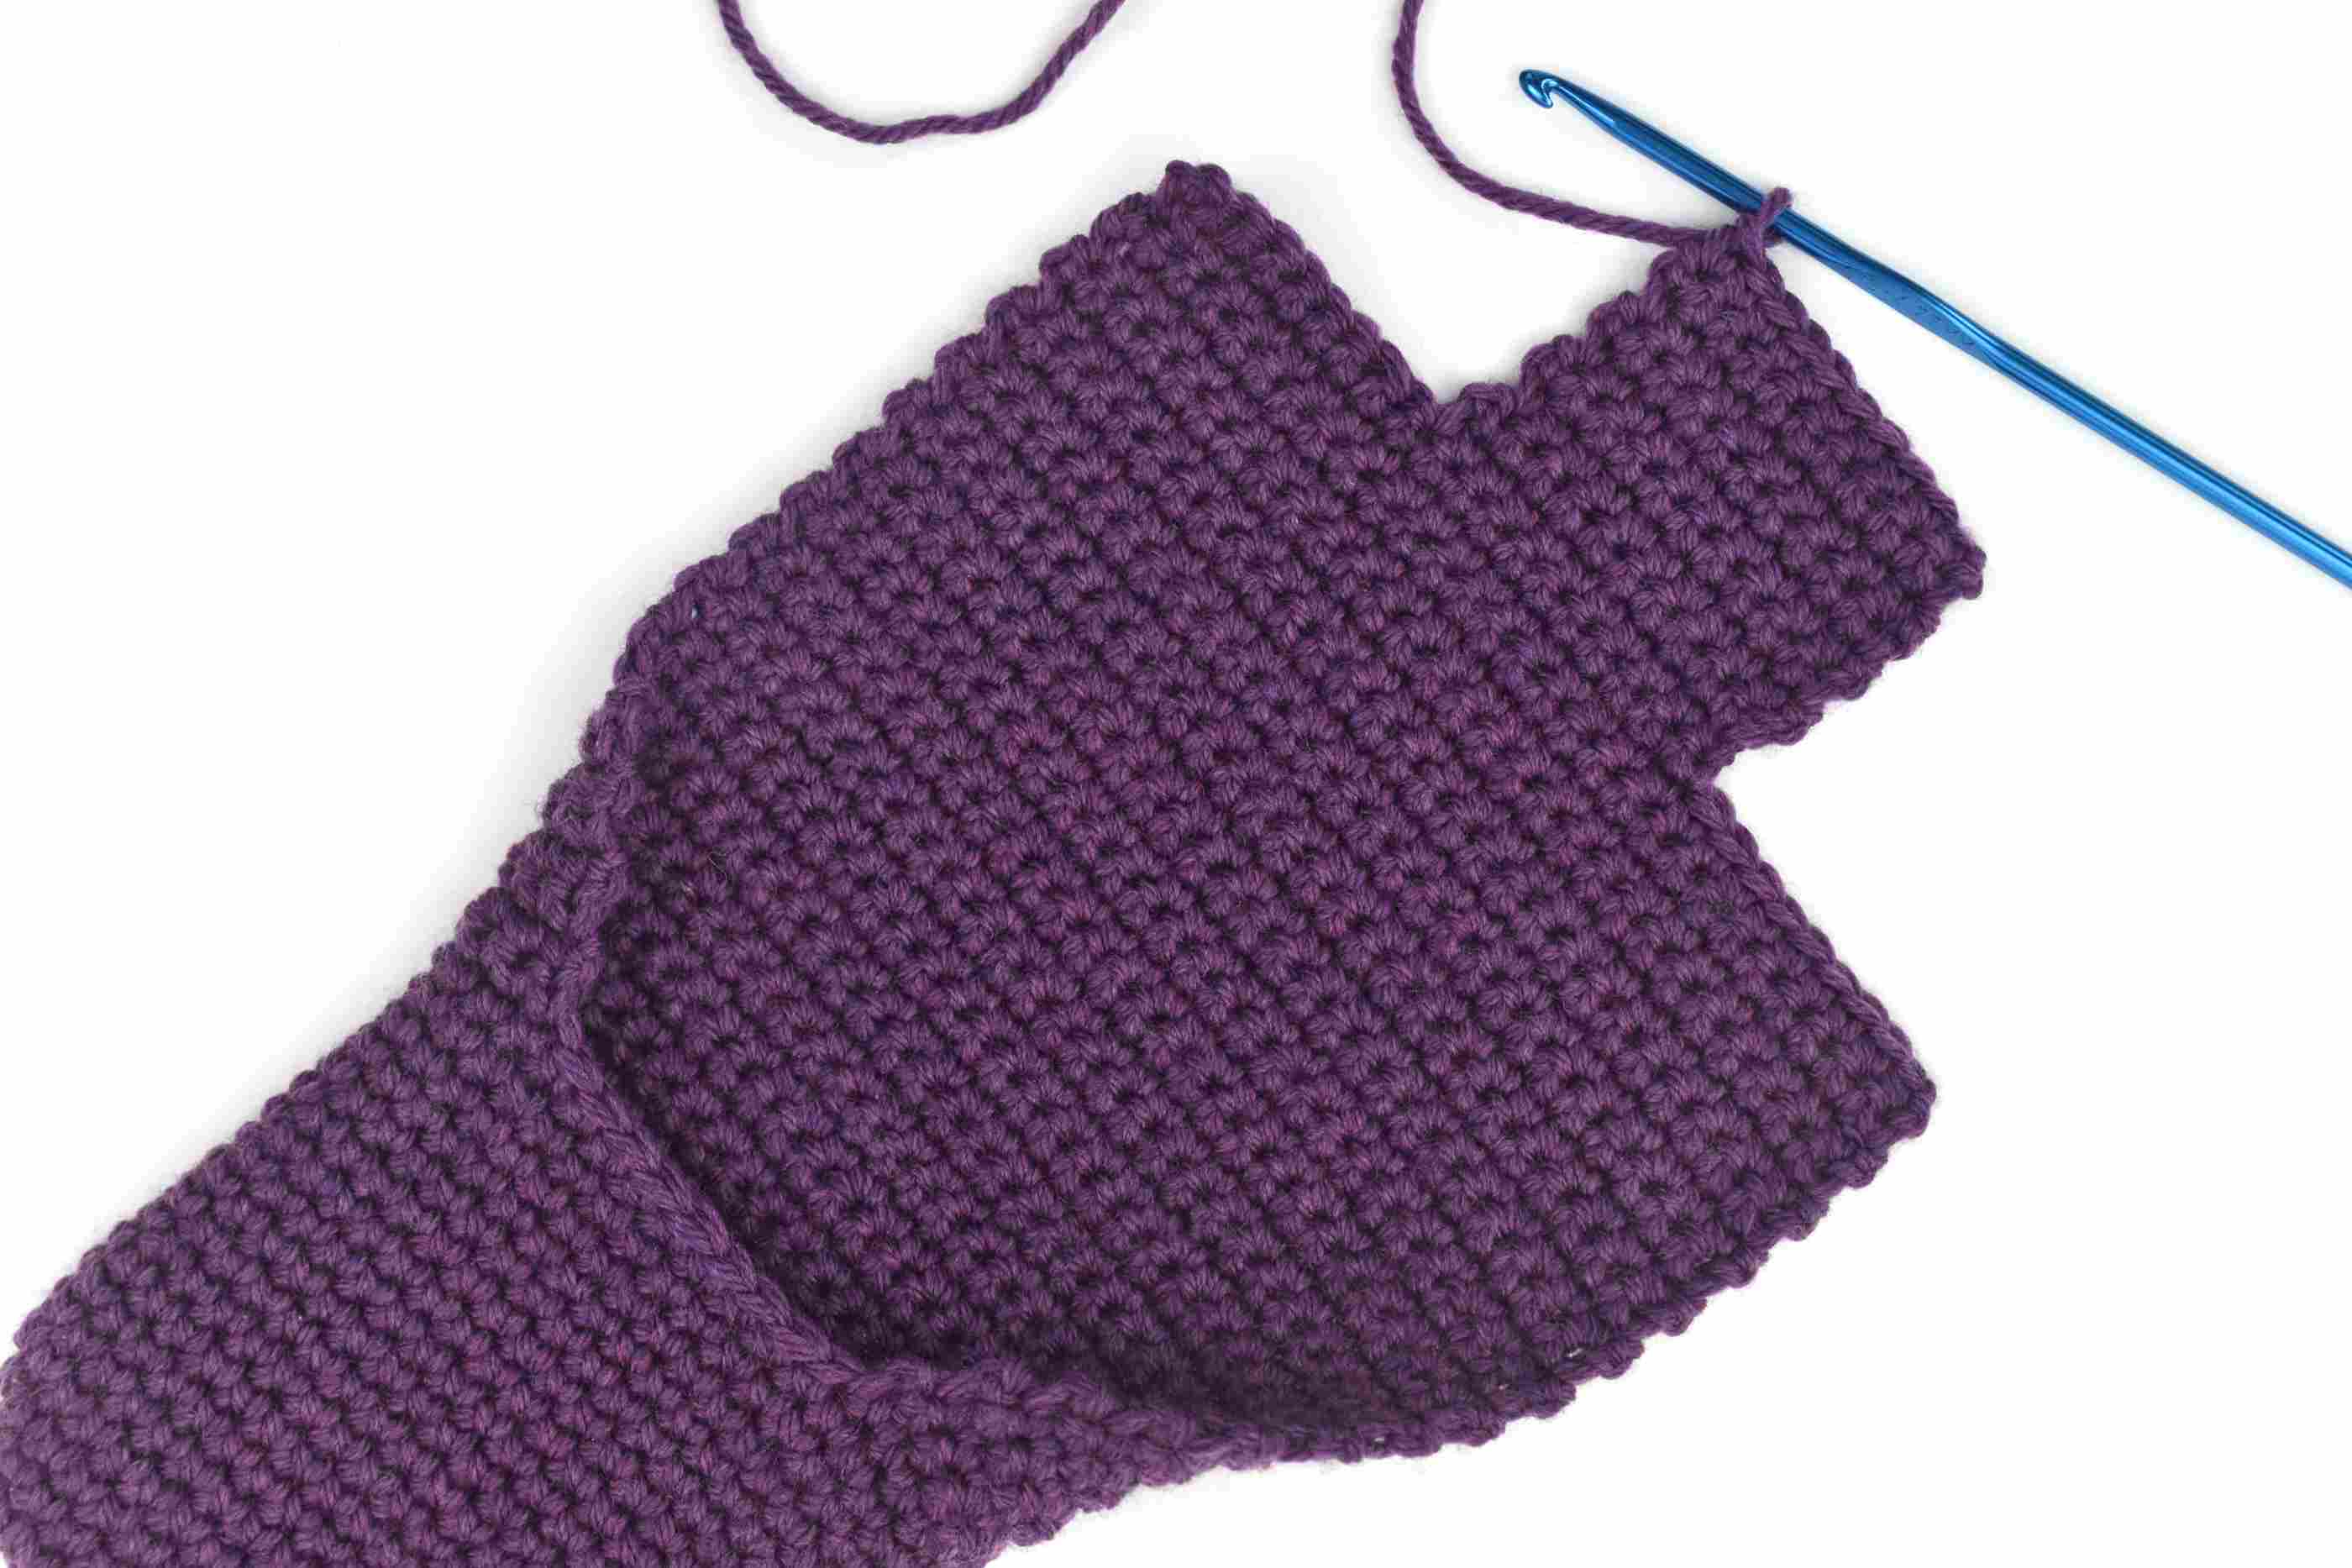 Crochet Slippers Pattern Simple Crochet Slippers Free Pattern